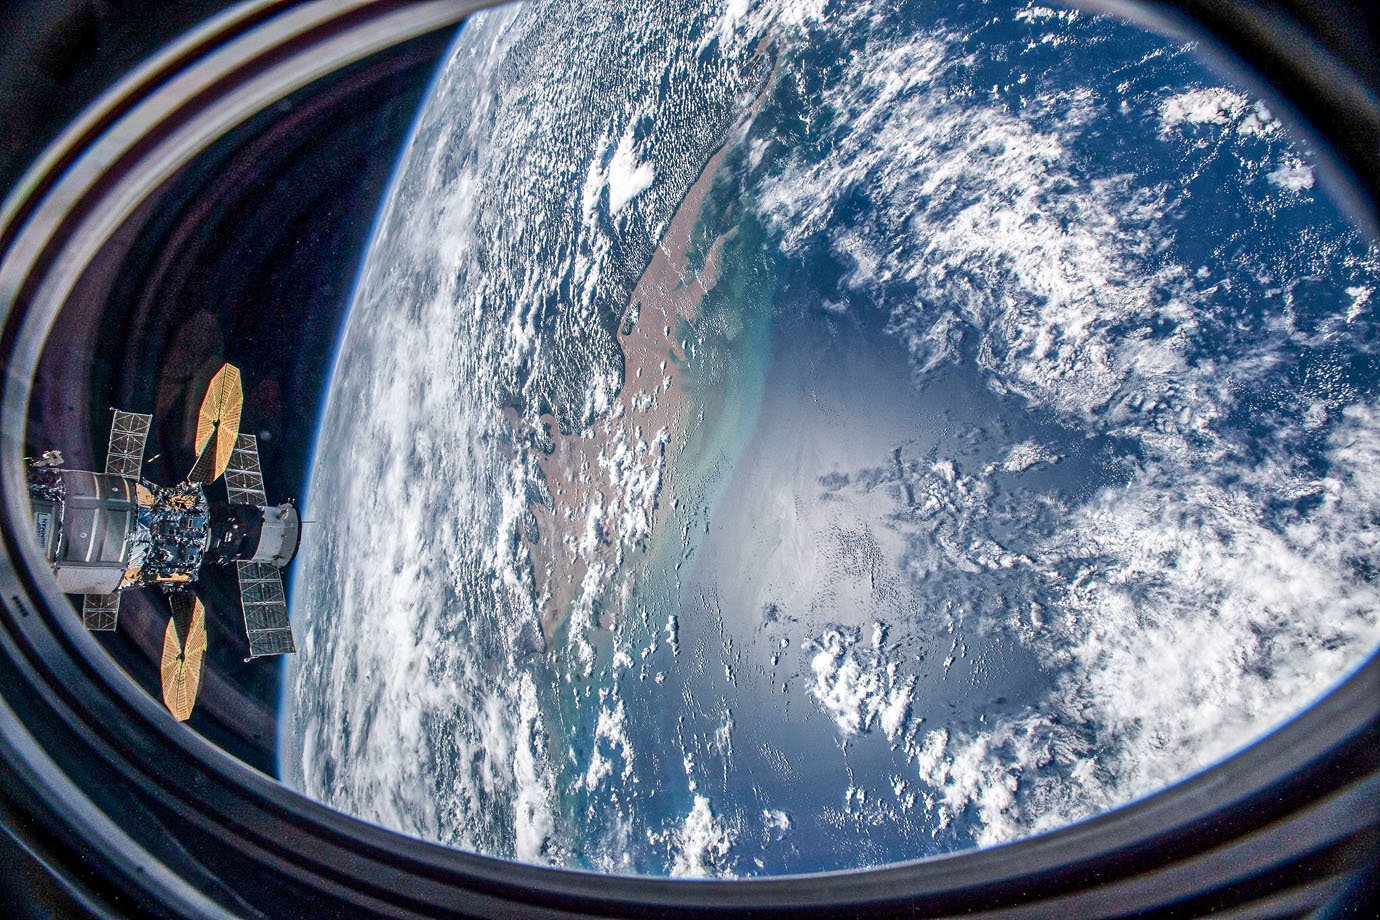 (27 de novembro de 2020) — Esta foto foi tirada de uma janela do veículo SpaceX Crew Dragon enquanto a Estação Espacial Internacional orbitava sobre o Oceano Atlântico próximo à costa do Brasil perto da foz do Rio Amazonas. Duas outras espaçonaves, incluindo a nave de carga Cygnus com seus dois painéis solares em forma de címbalo proeminentes e, atrás dele, a tripulação russa Soyuz MS-17 com seus painéis solares retangulares, também são retratados atracados no laboratório orbital